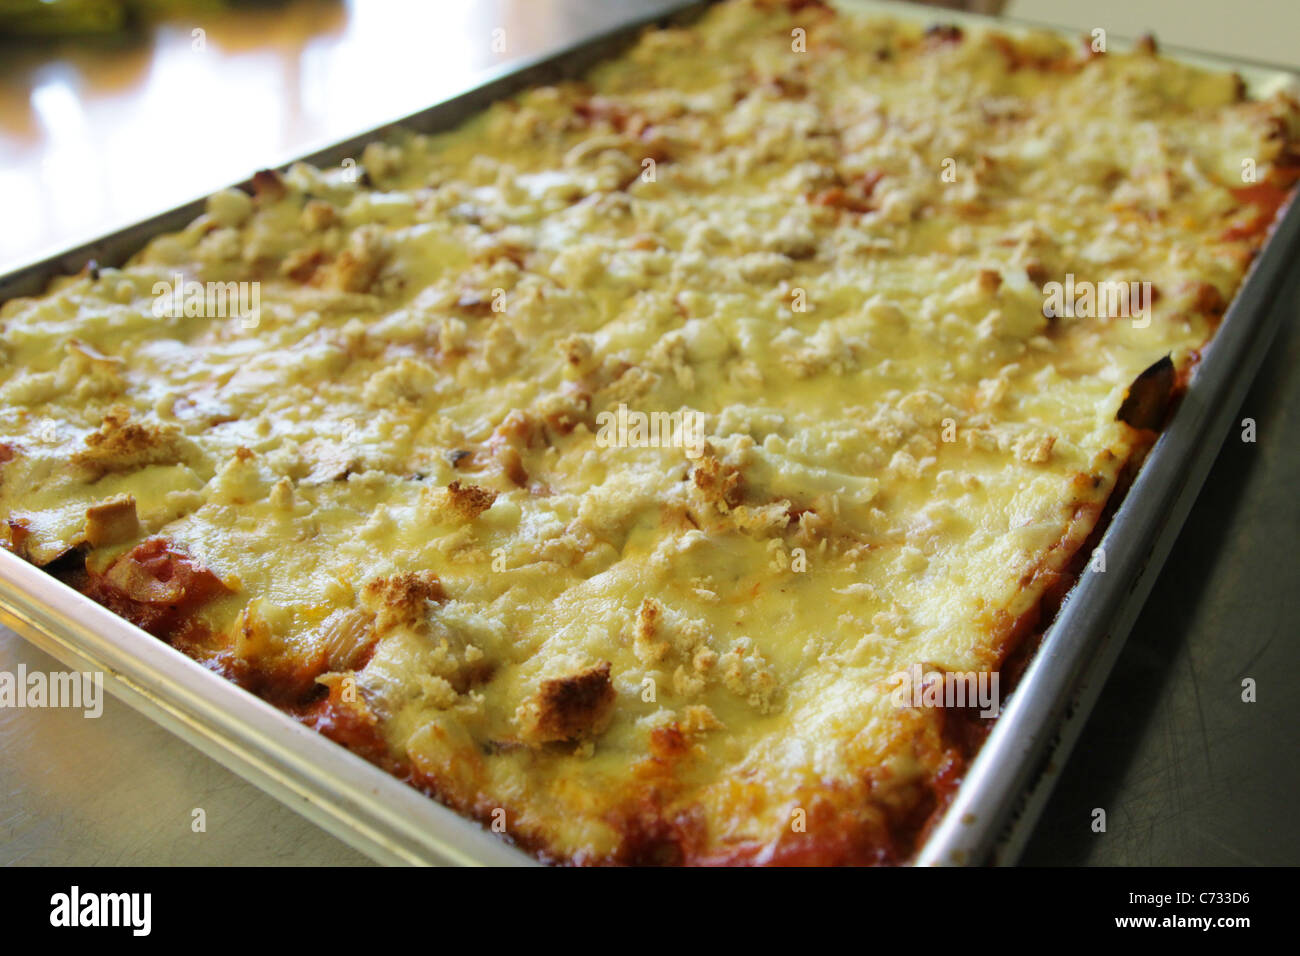 A large pan of lasagna Stock Photo - Alamy